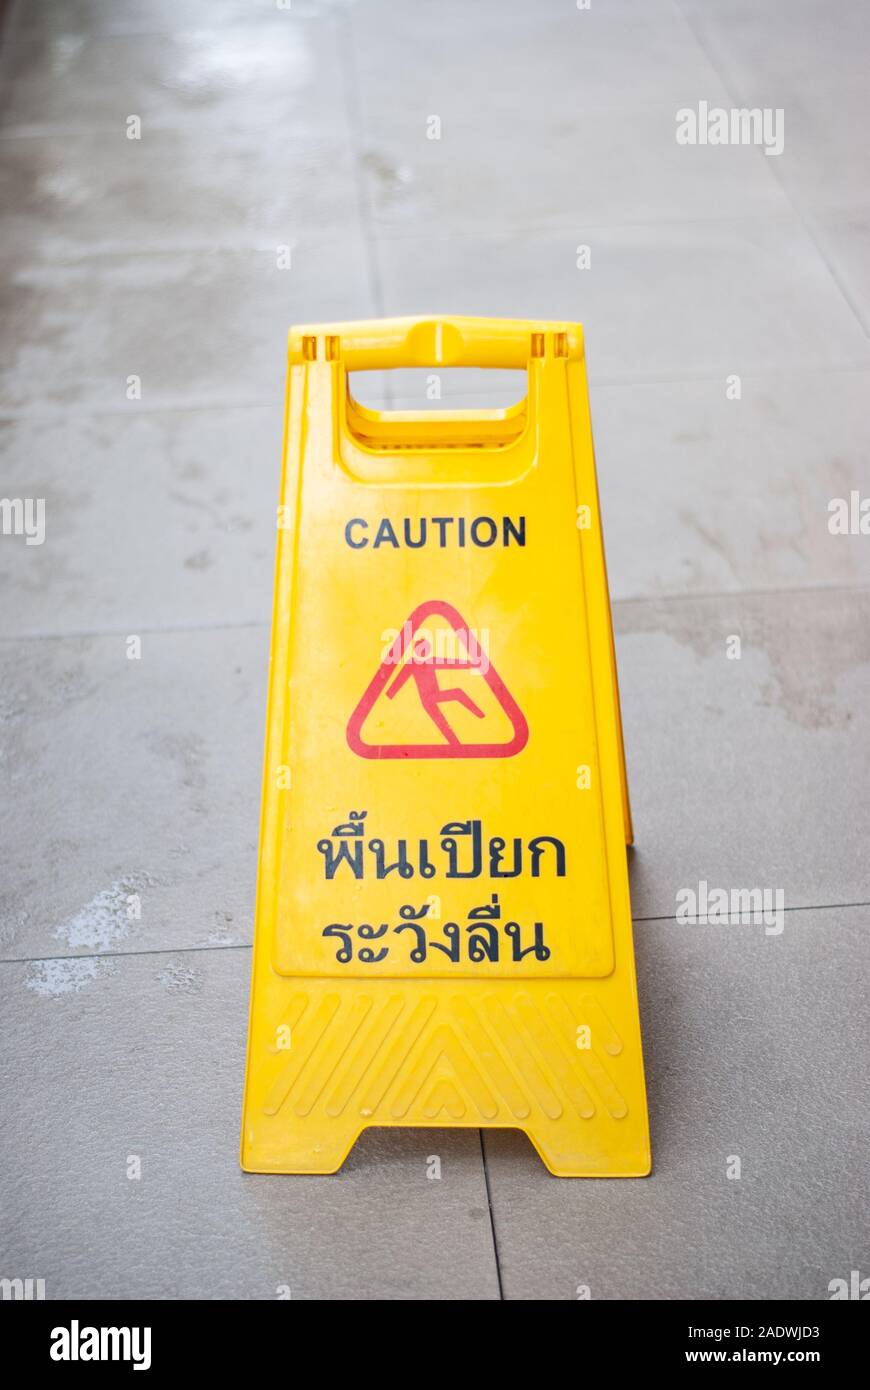 Wet Floor Careful To Slip Stock Photo 335550799 Alamy